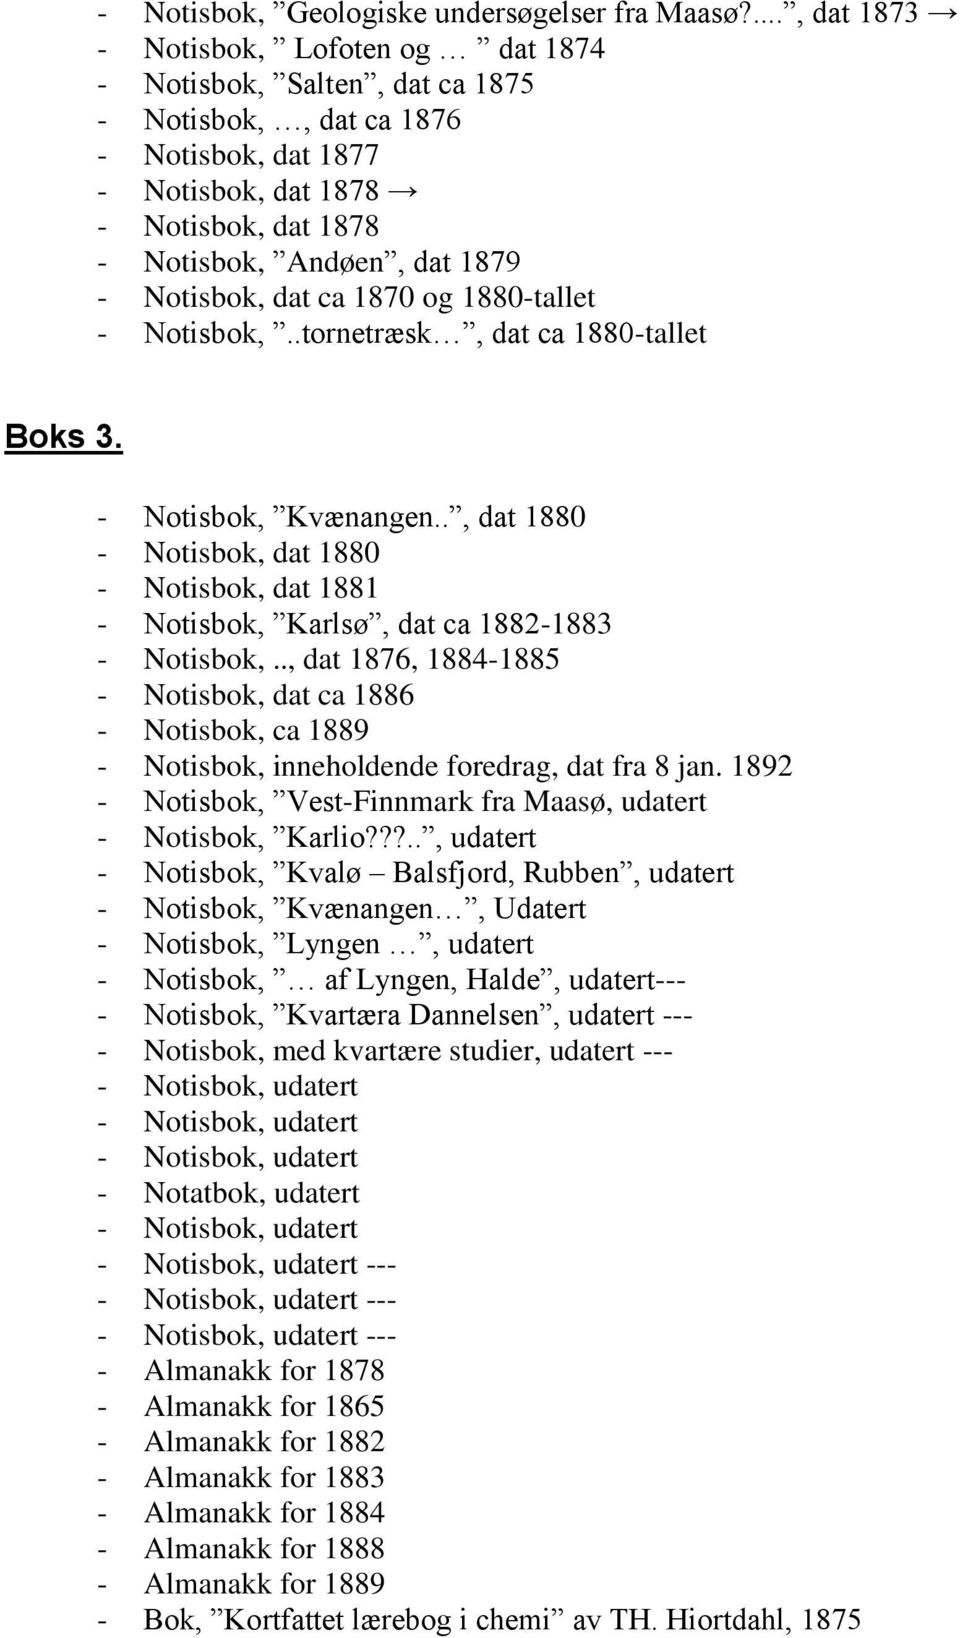 Notisbok, dat ca 1870 og 1880-tallet - Notisbok,..tornetræsk, dat ca 1880-tallet Boks 3. - Notisbok, Kvænangen.